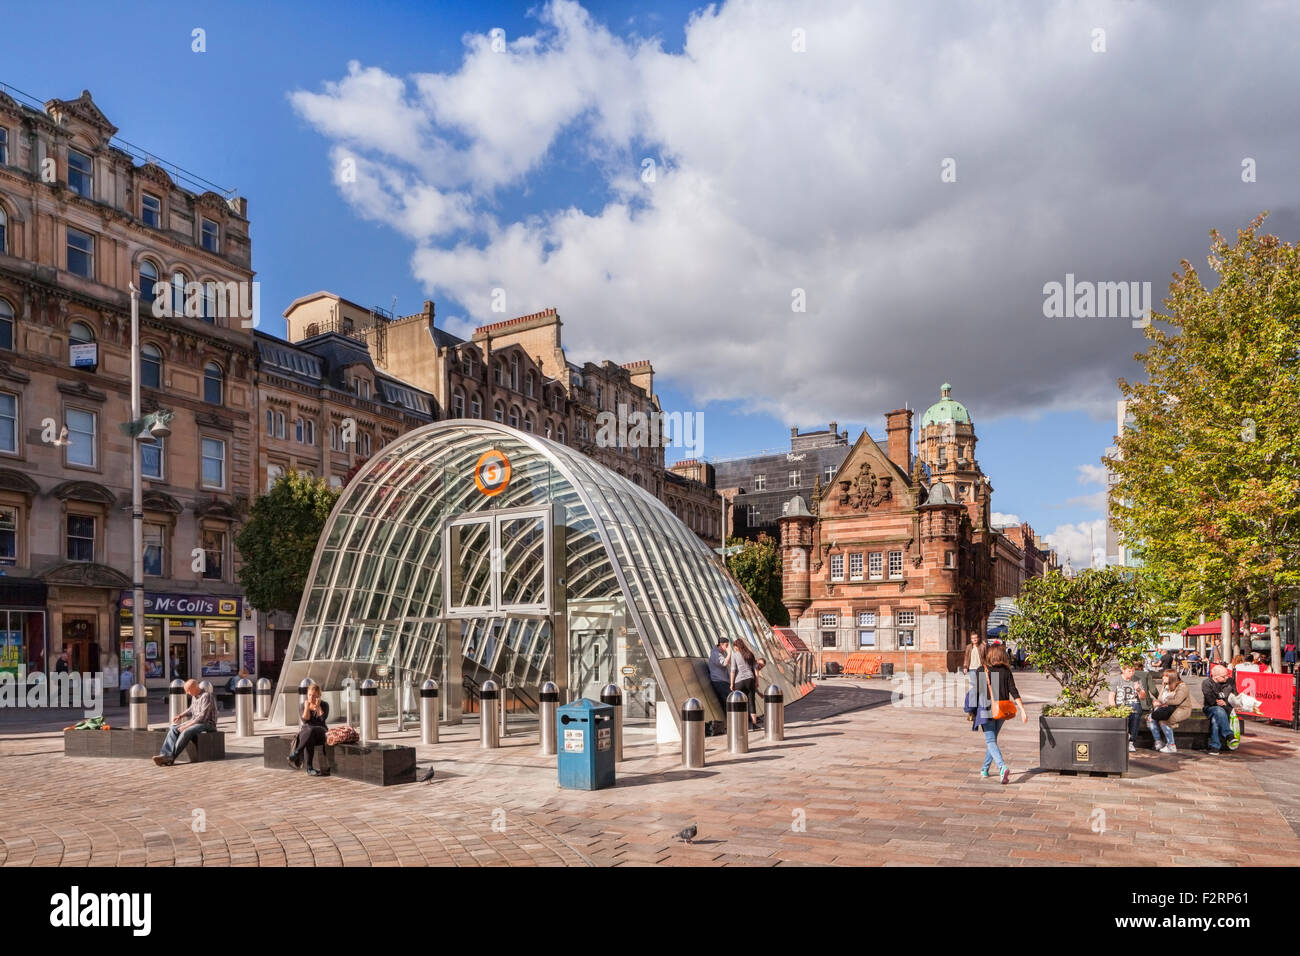 St Enoch Square, avec l'ancien et nouveau métro entrées, Glasgow, Écosse. Banque D'Images